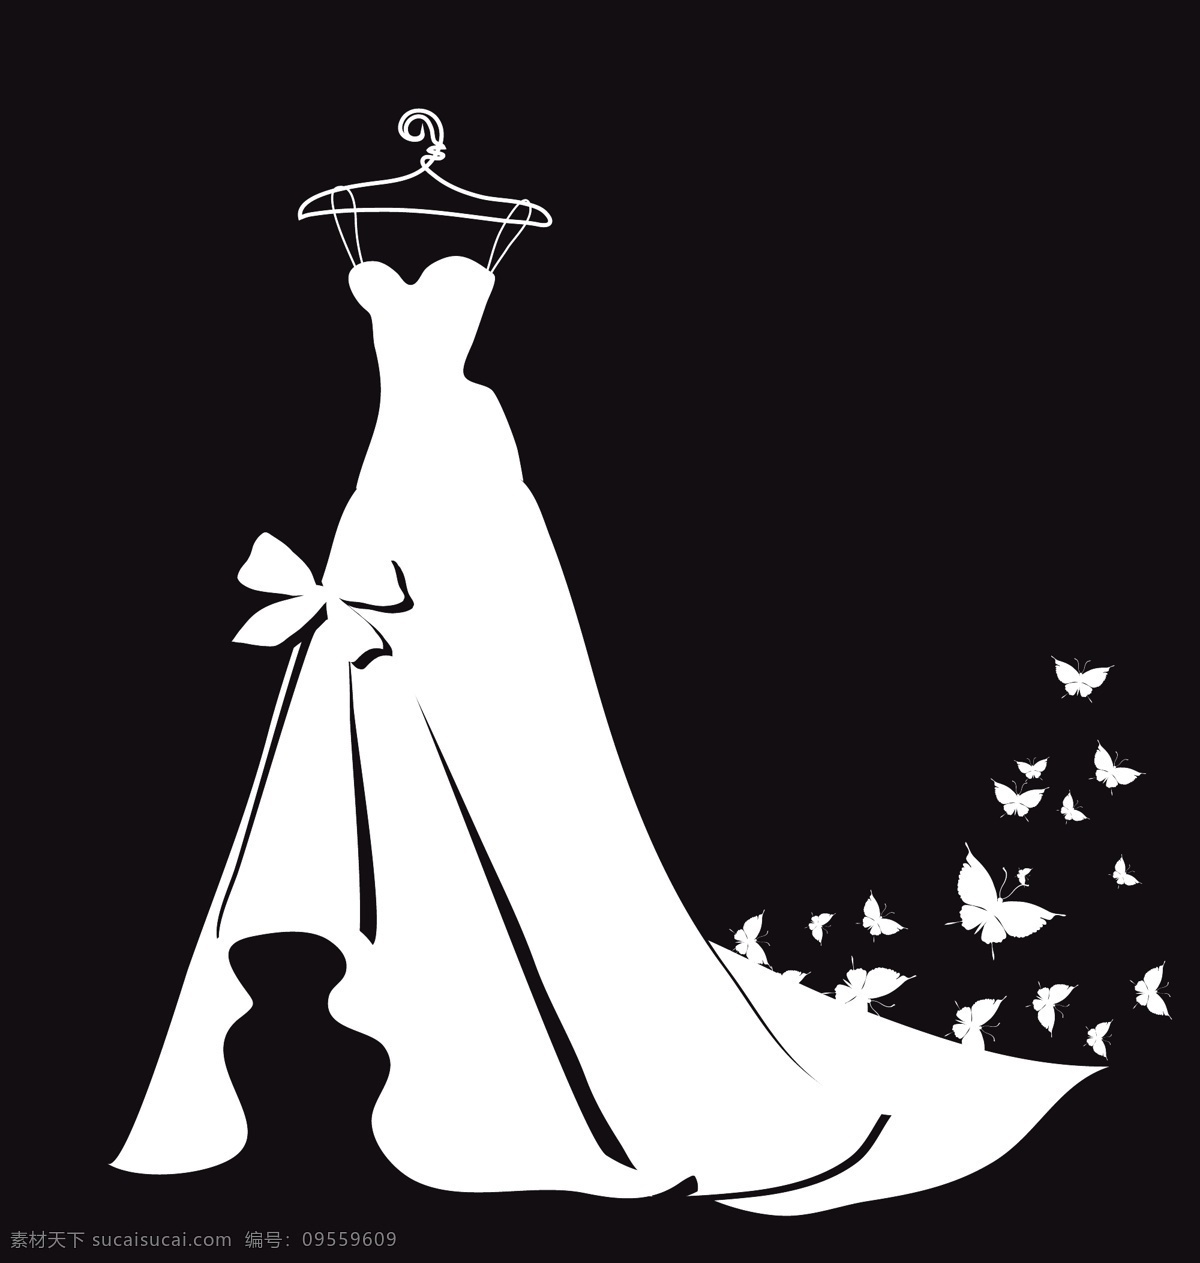 白色 婚纱 剪影 矢量 礼服 服装设计 服装 衣服 衣架 蝴蝶结 装饰 蝴蝶 插画 背景 海报 画册